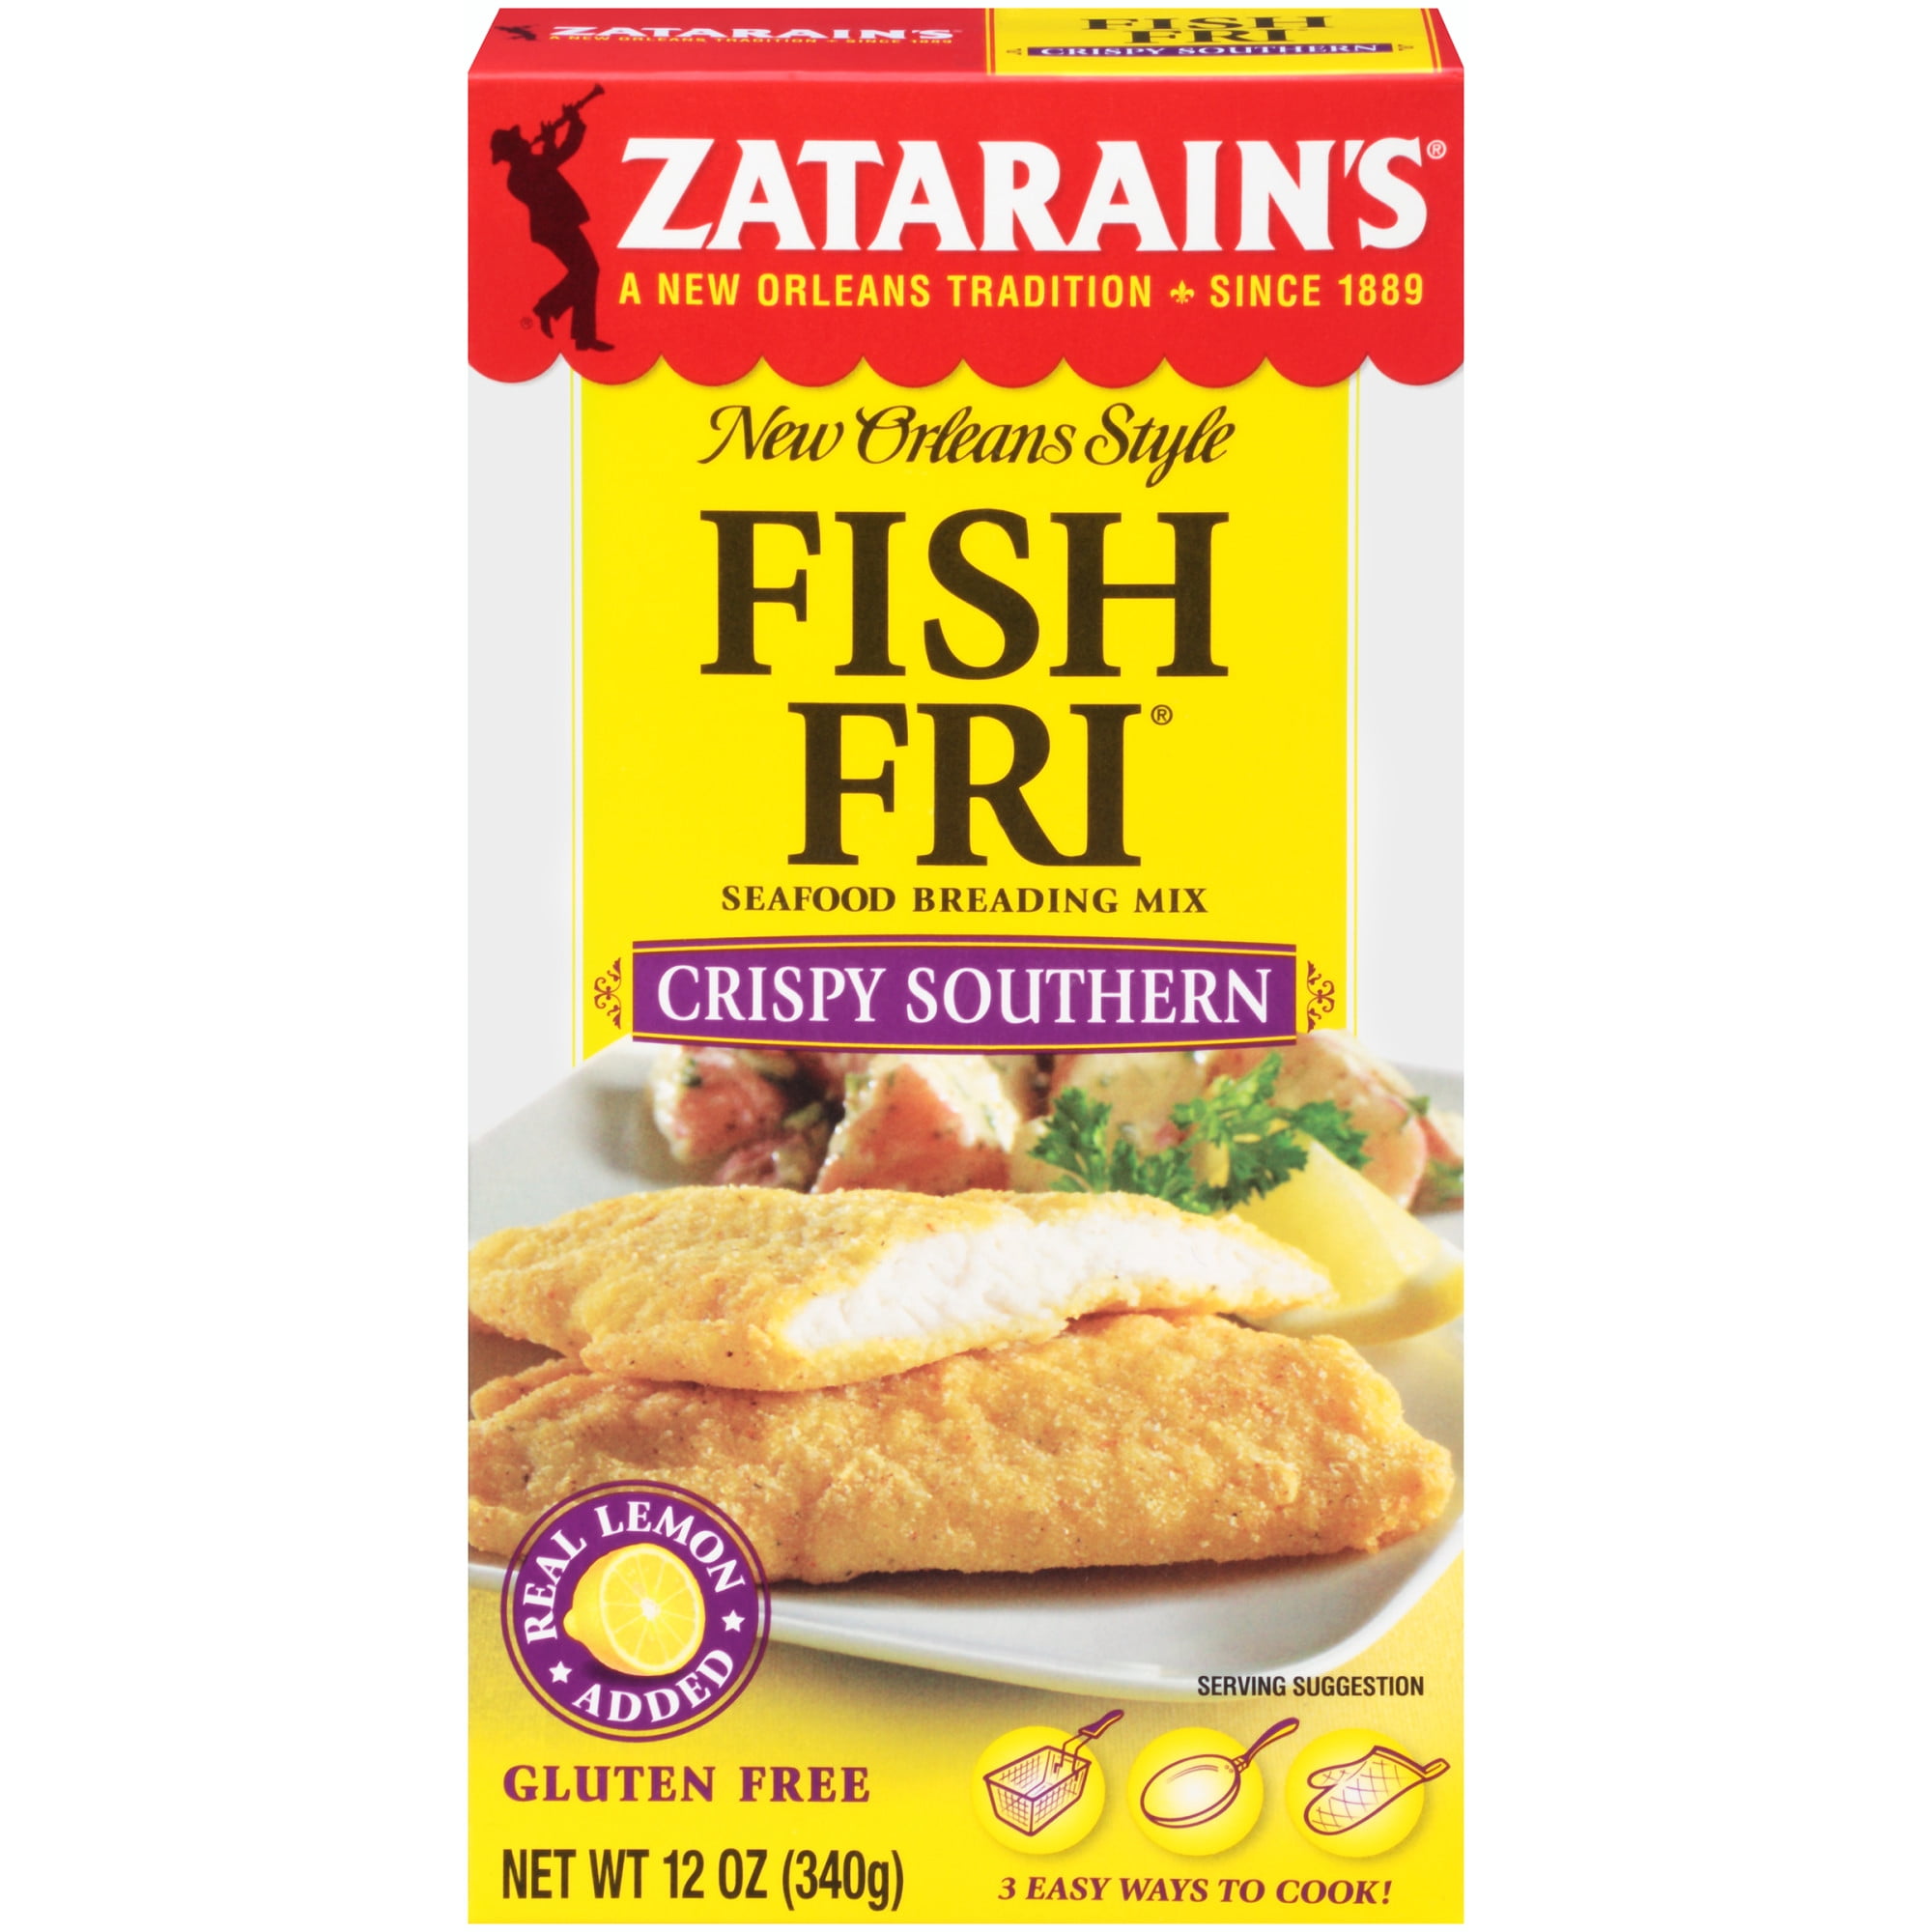 Zatarain's Fish Fry - Crispy Southern, 12 oz